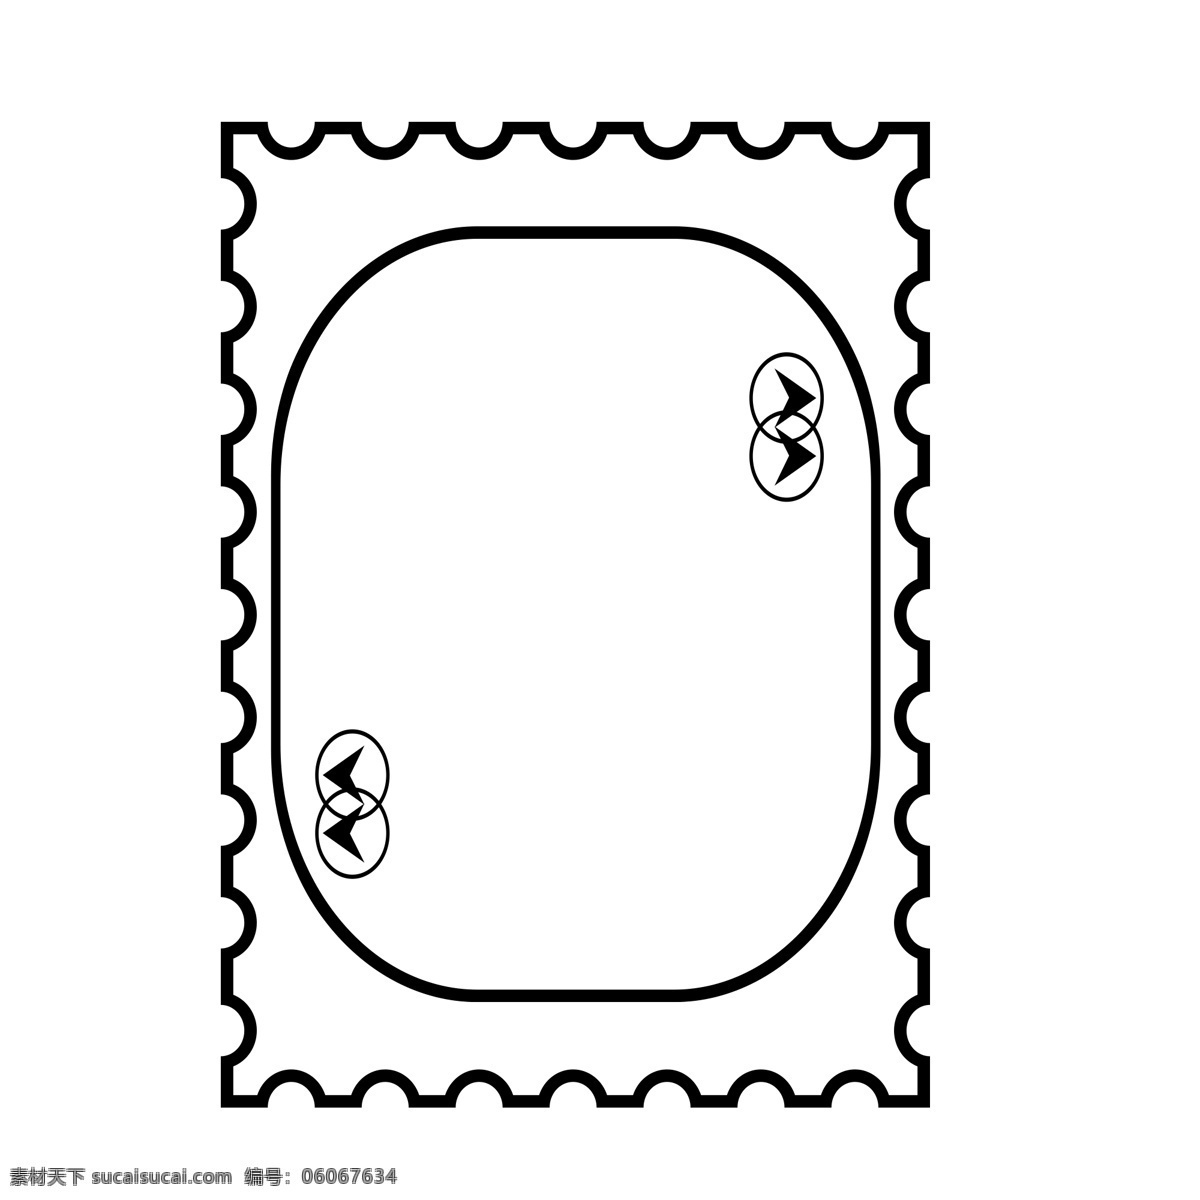 简单 线条 黑白 色系 边框 简约 商用 条纹 可商用 邮票形式